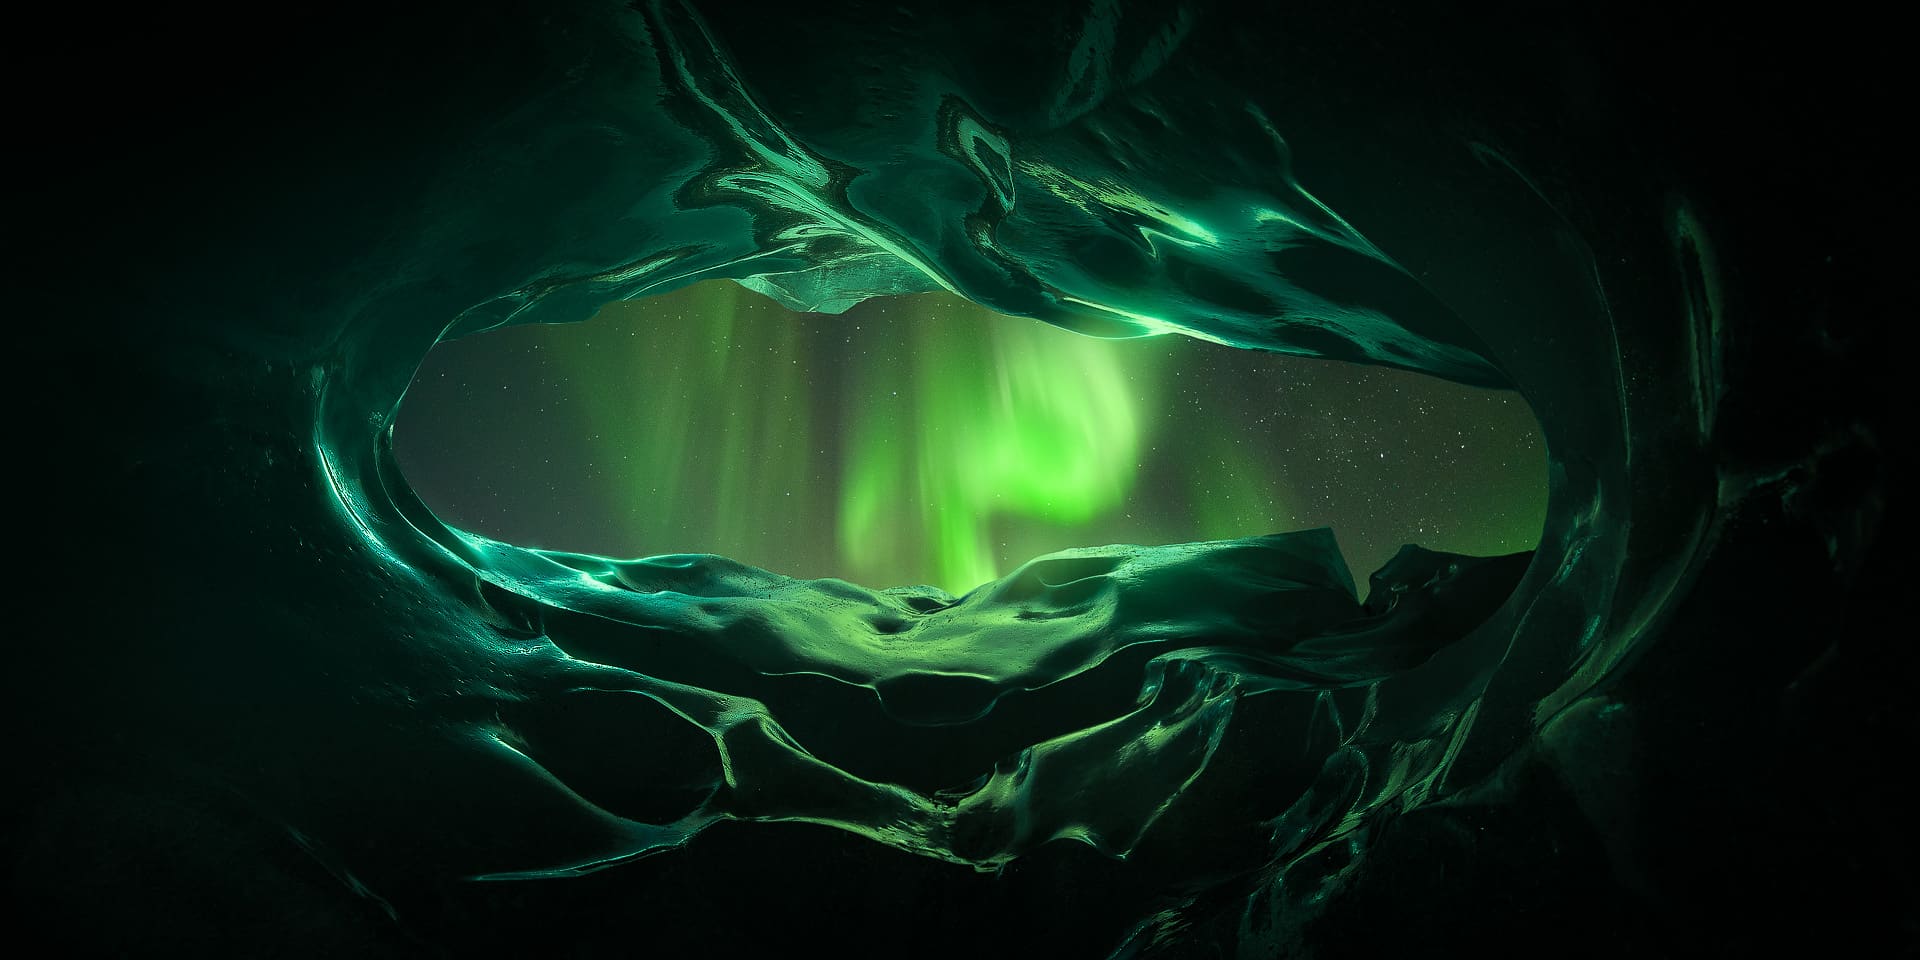 Best Aurora Borealis images